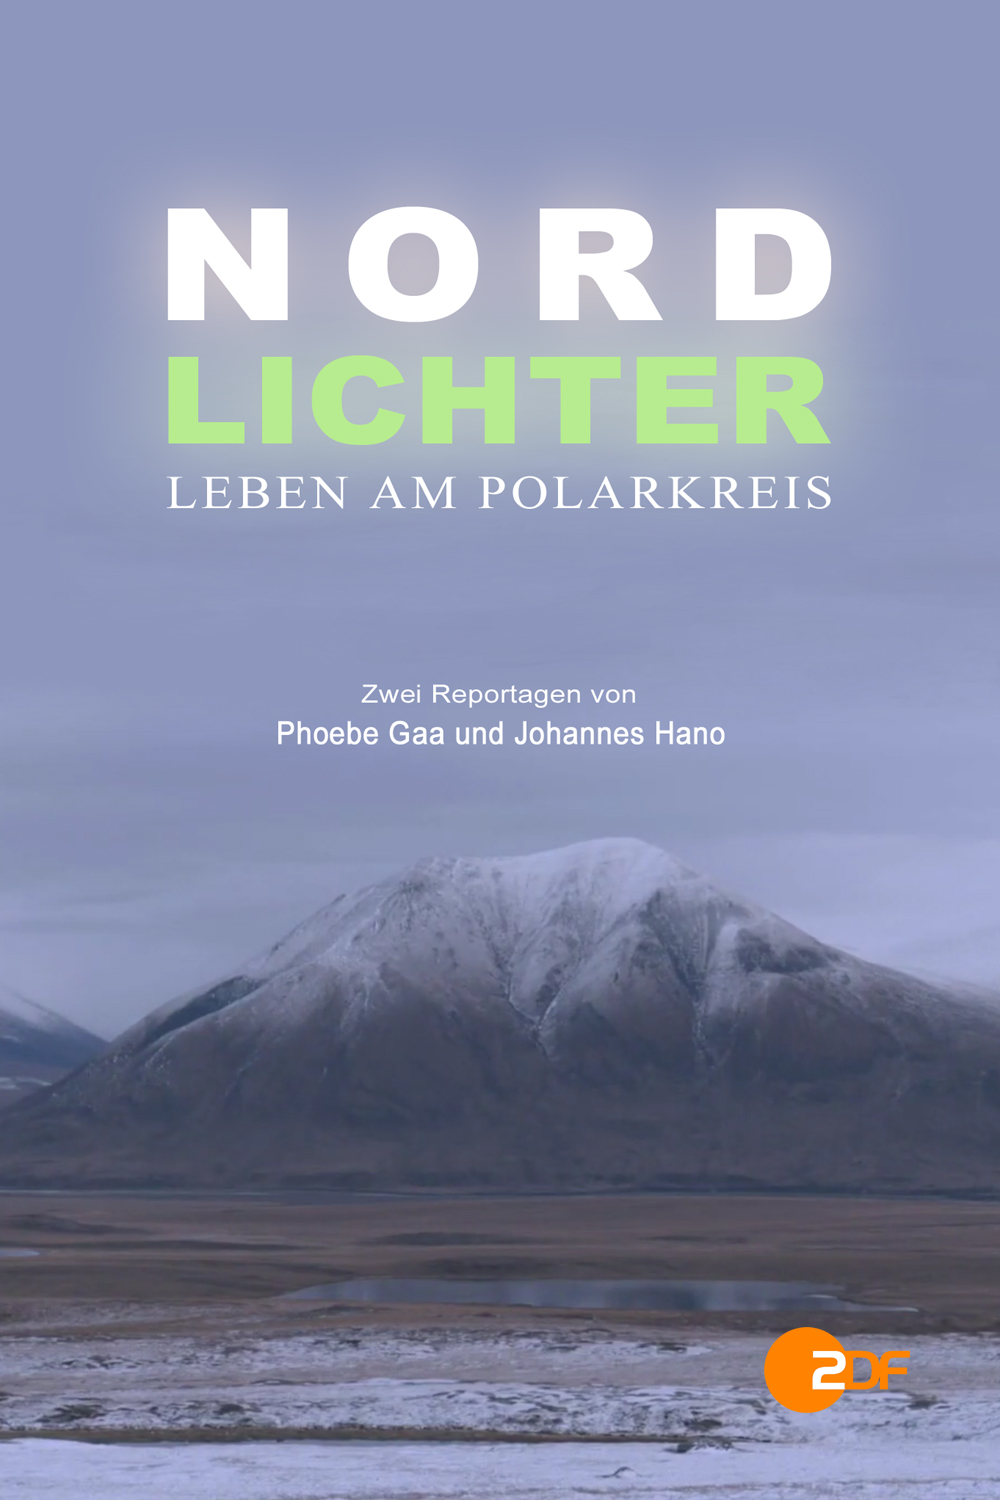 Nordlichter: Leben am Polarkreis